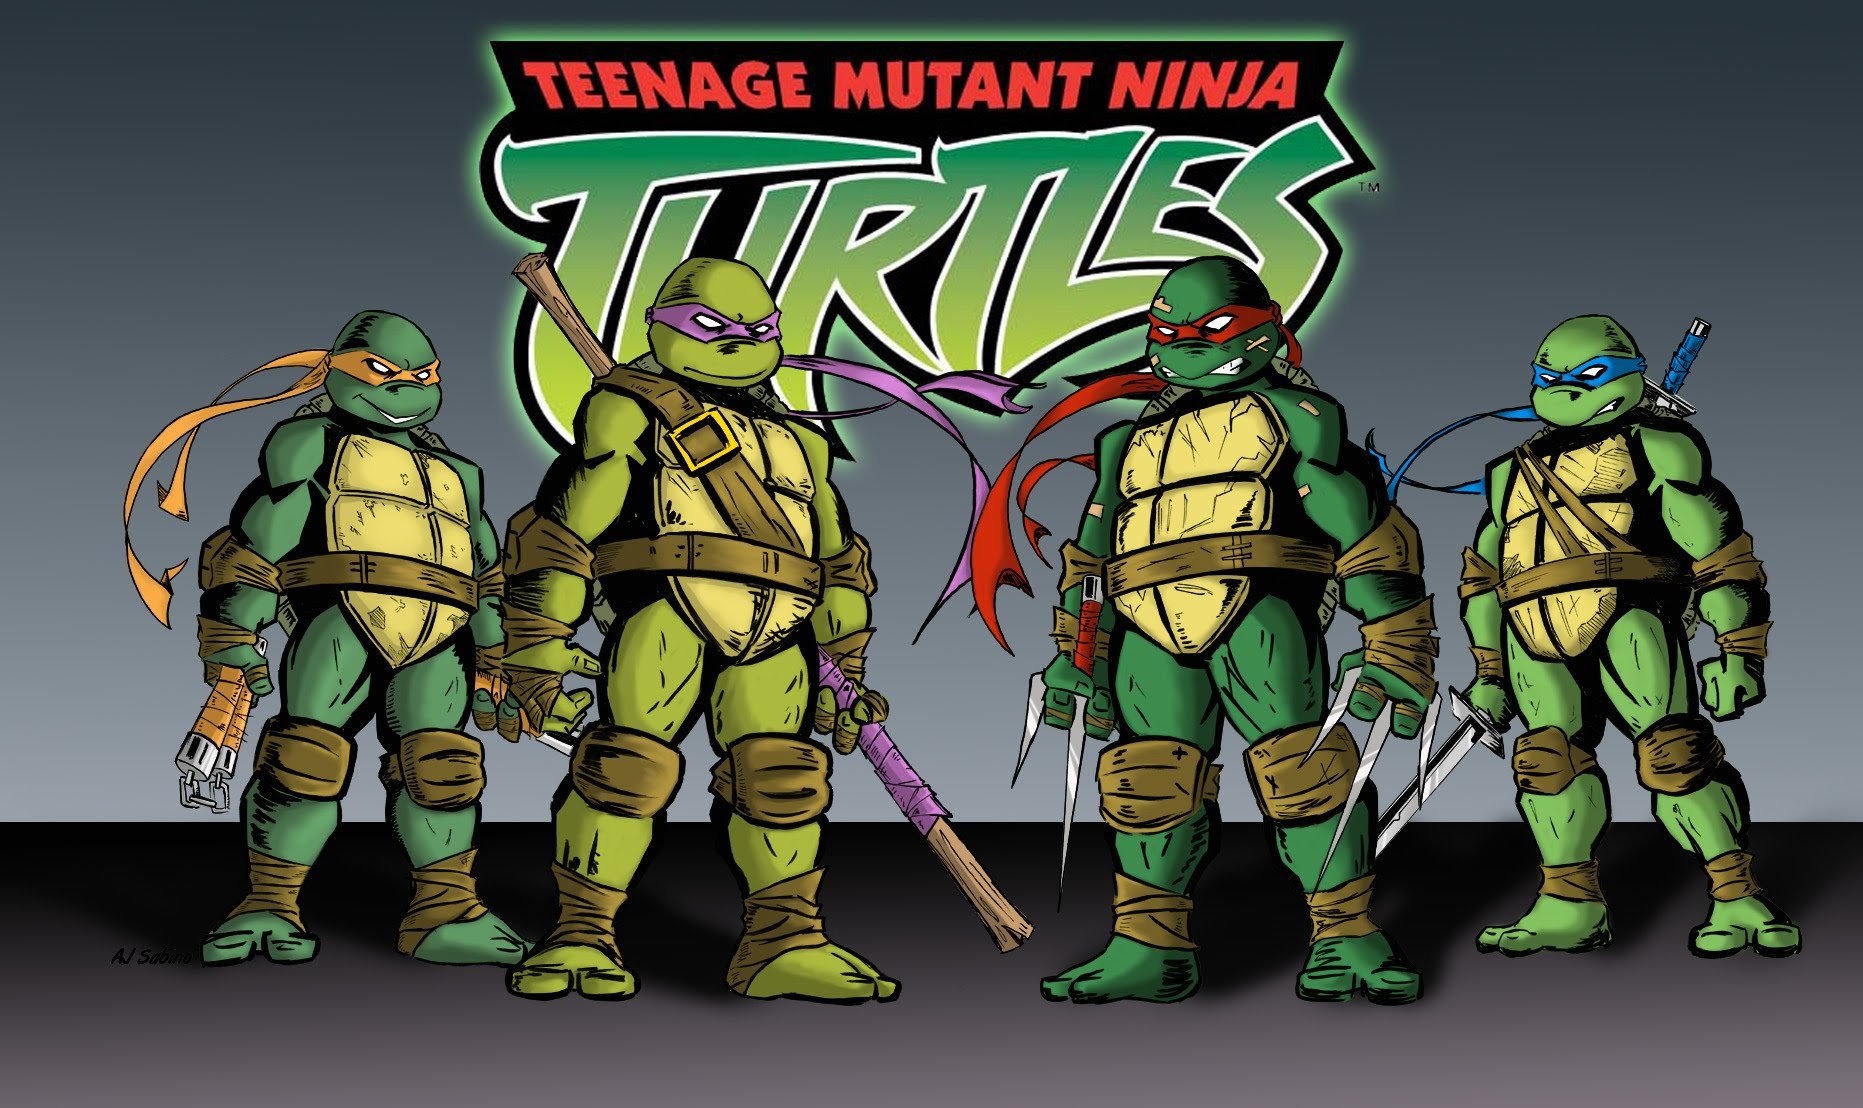 978232-teenage, Mutant, Ninja, Turtles, Fantasy, Sci-fi, Adventure, Warrior...